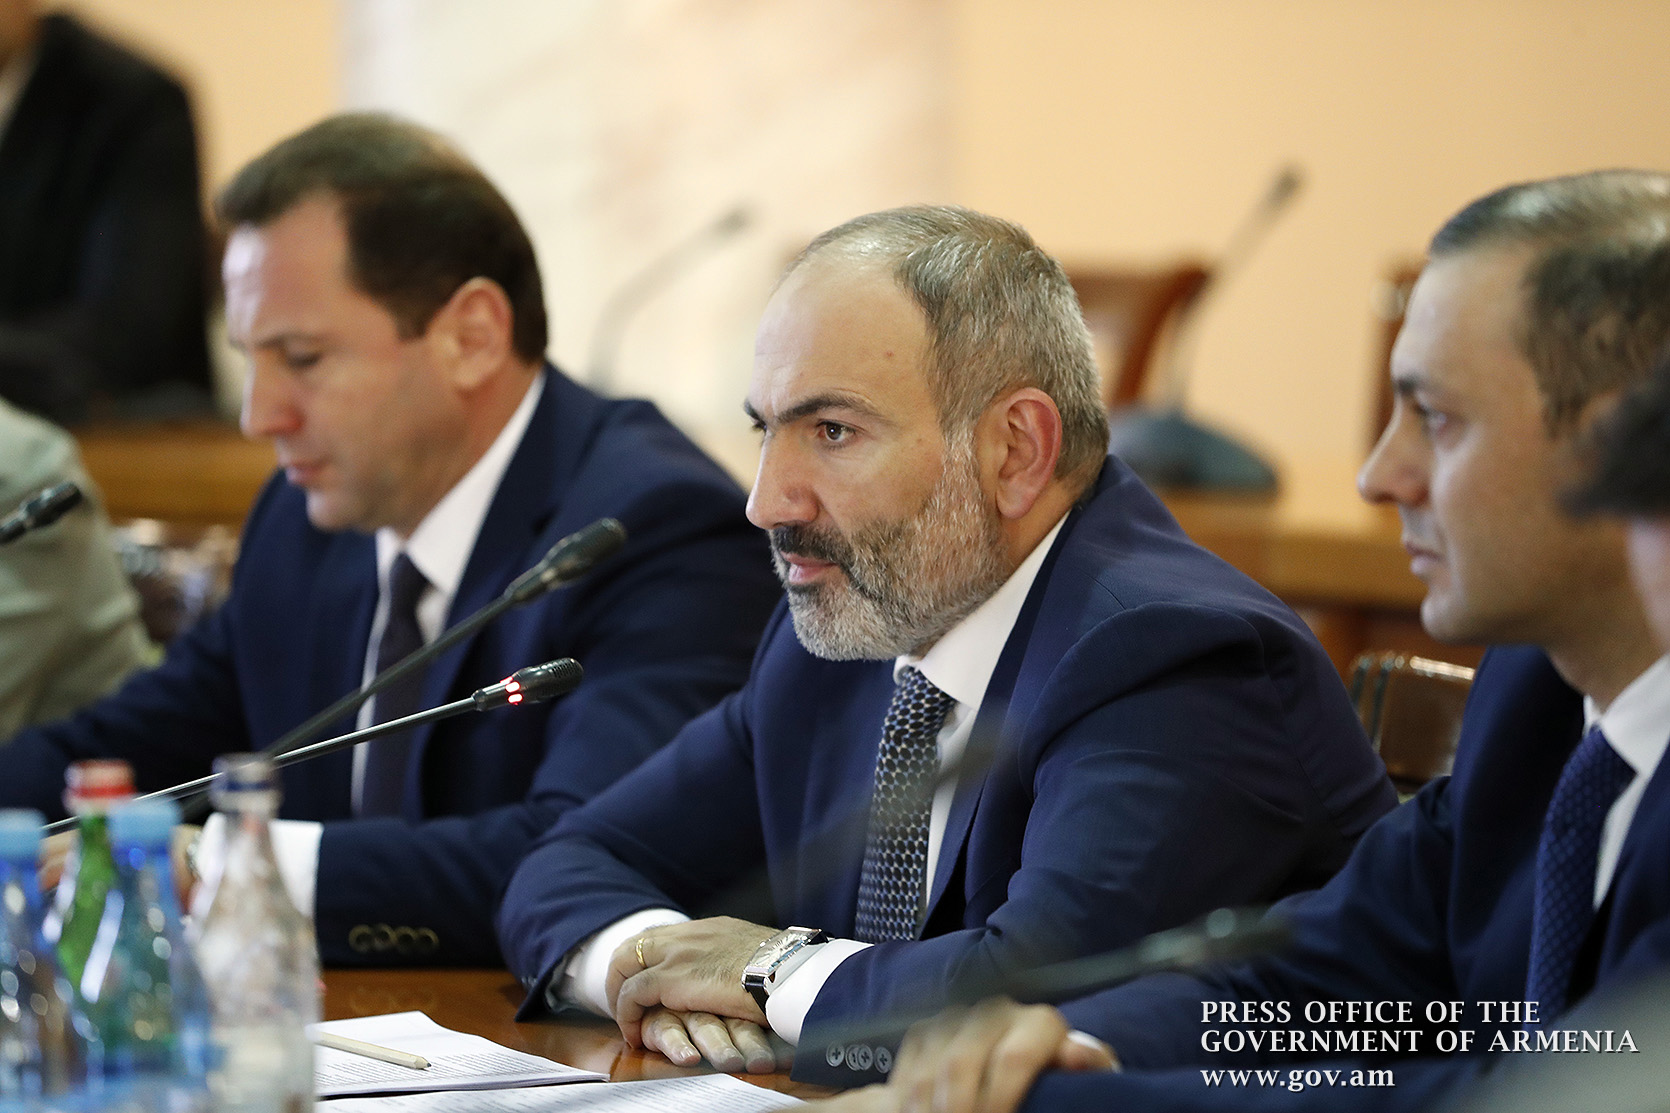 Правительство обеспечивает поставки вооружений и техники в нормальном режиме - Пашинян